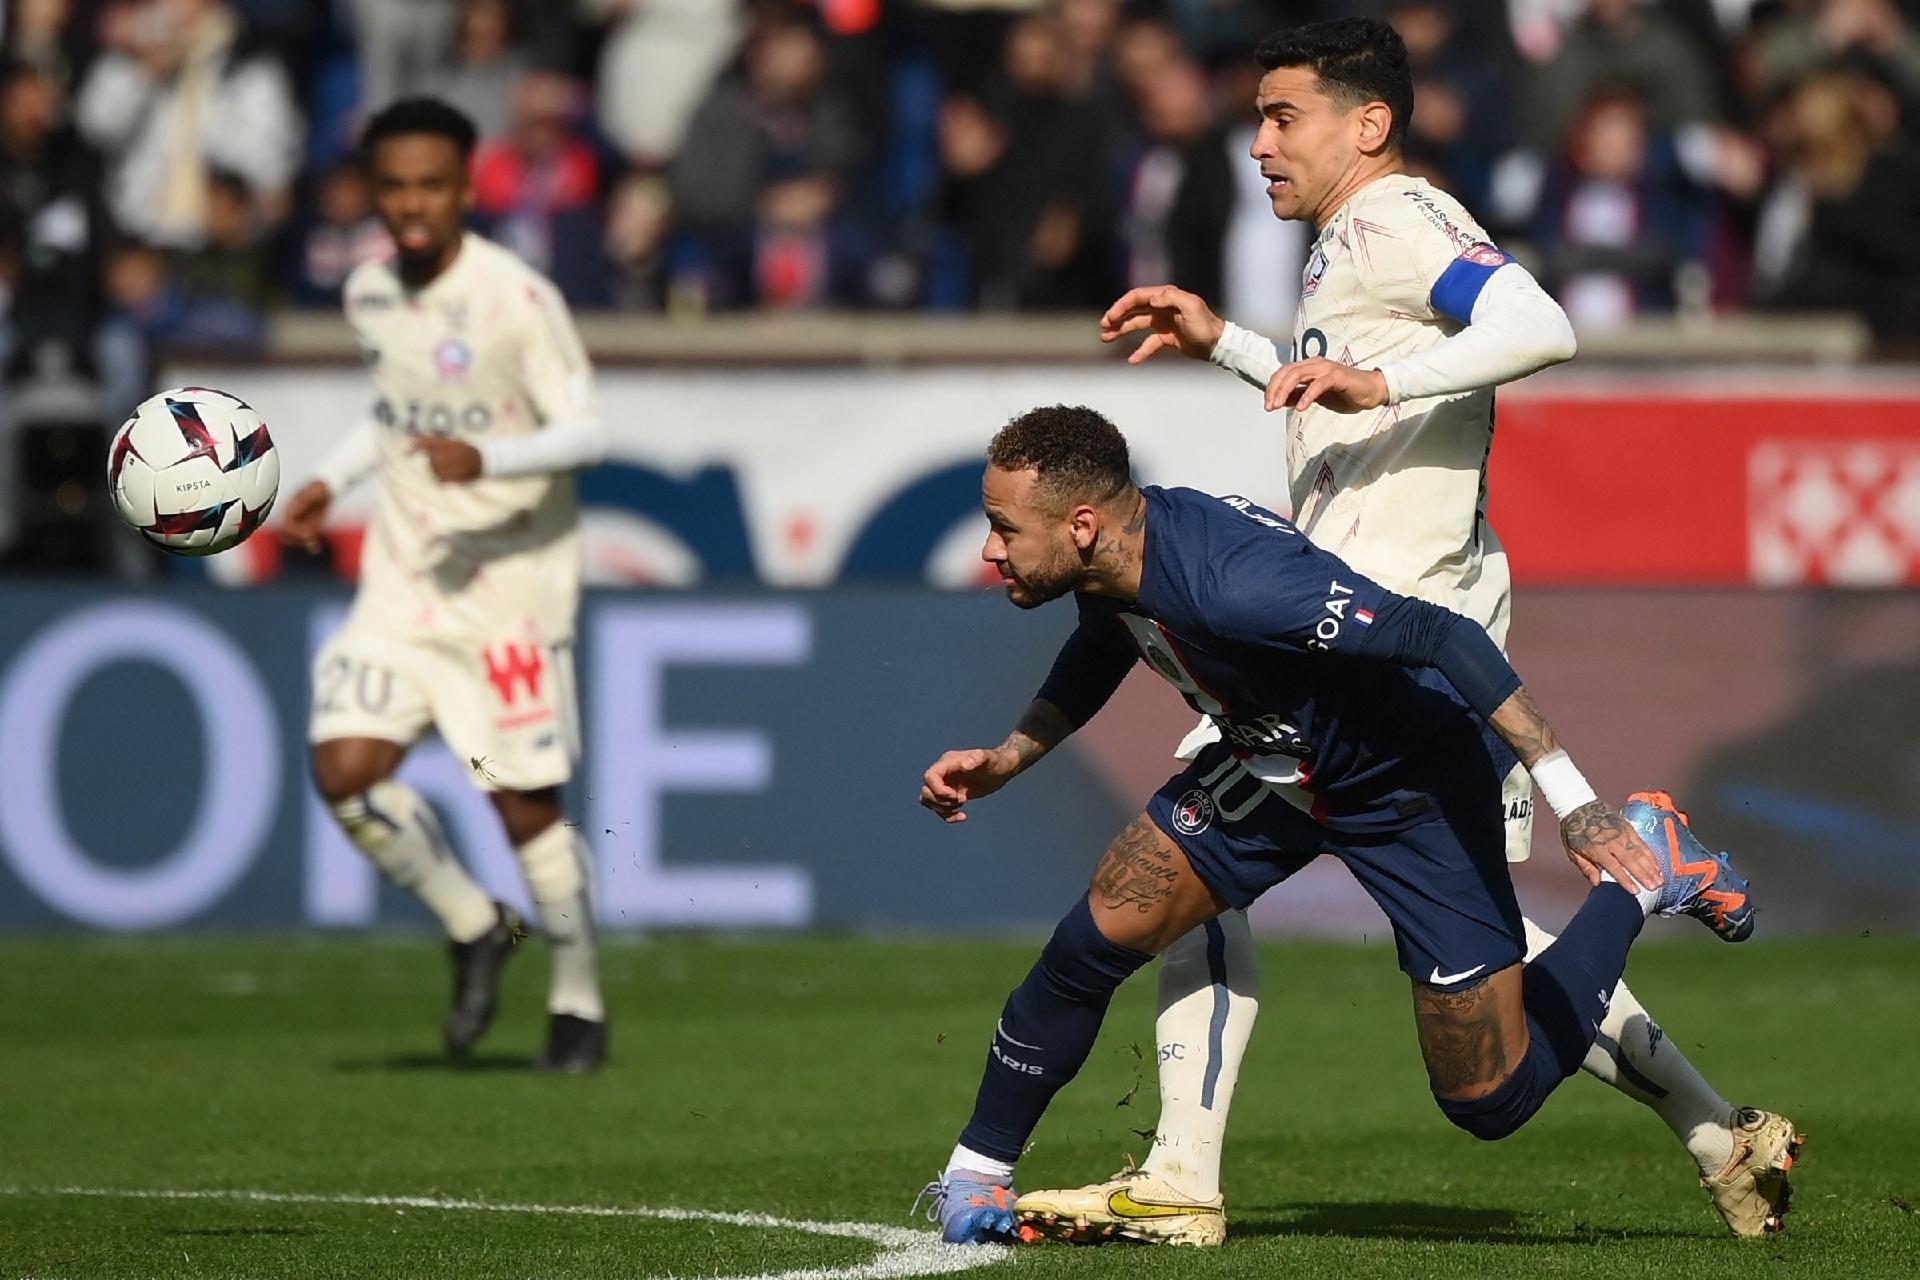 França: técnico sensação é mais novo que Neymar e paga multa todo jogo